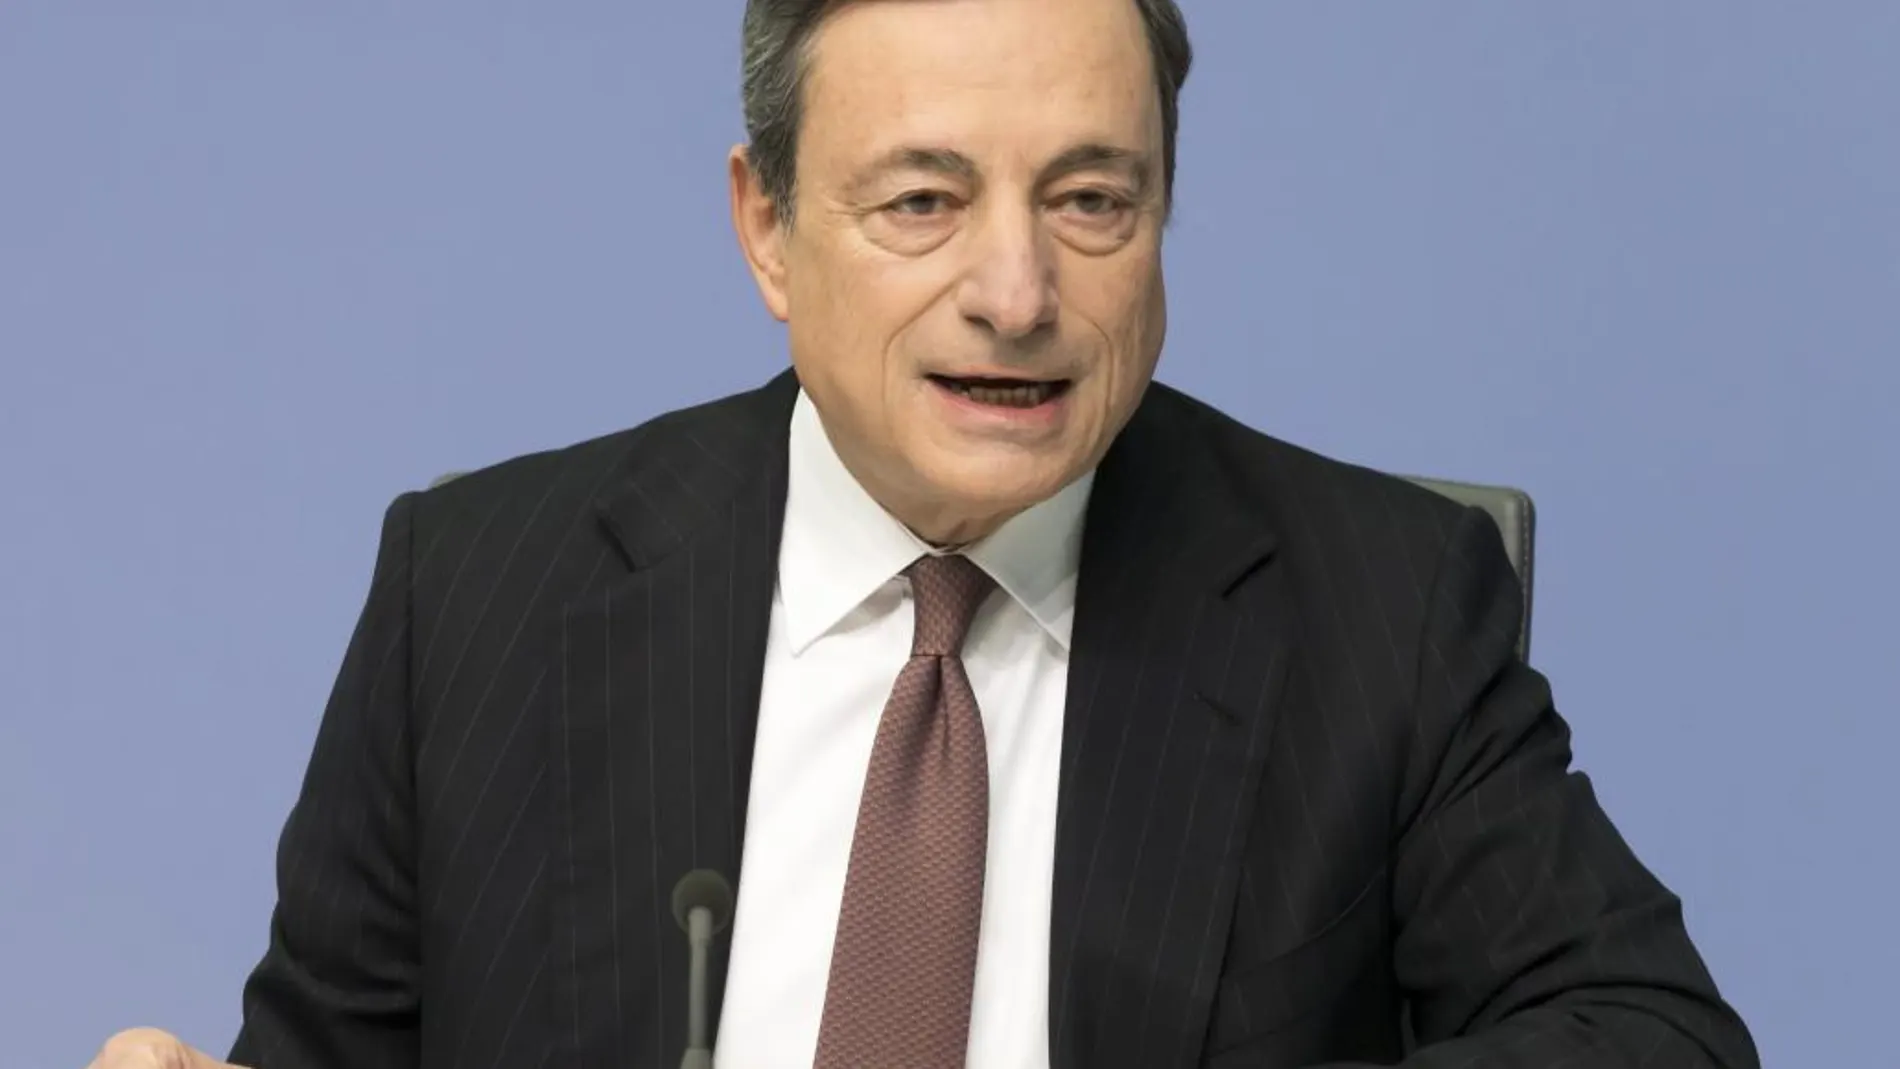 El presidente del Banco Central Europeo, Mario Draghi, durante la rueda de prensa en la sede del banco en Fráncfort (Alemania)